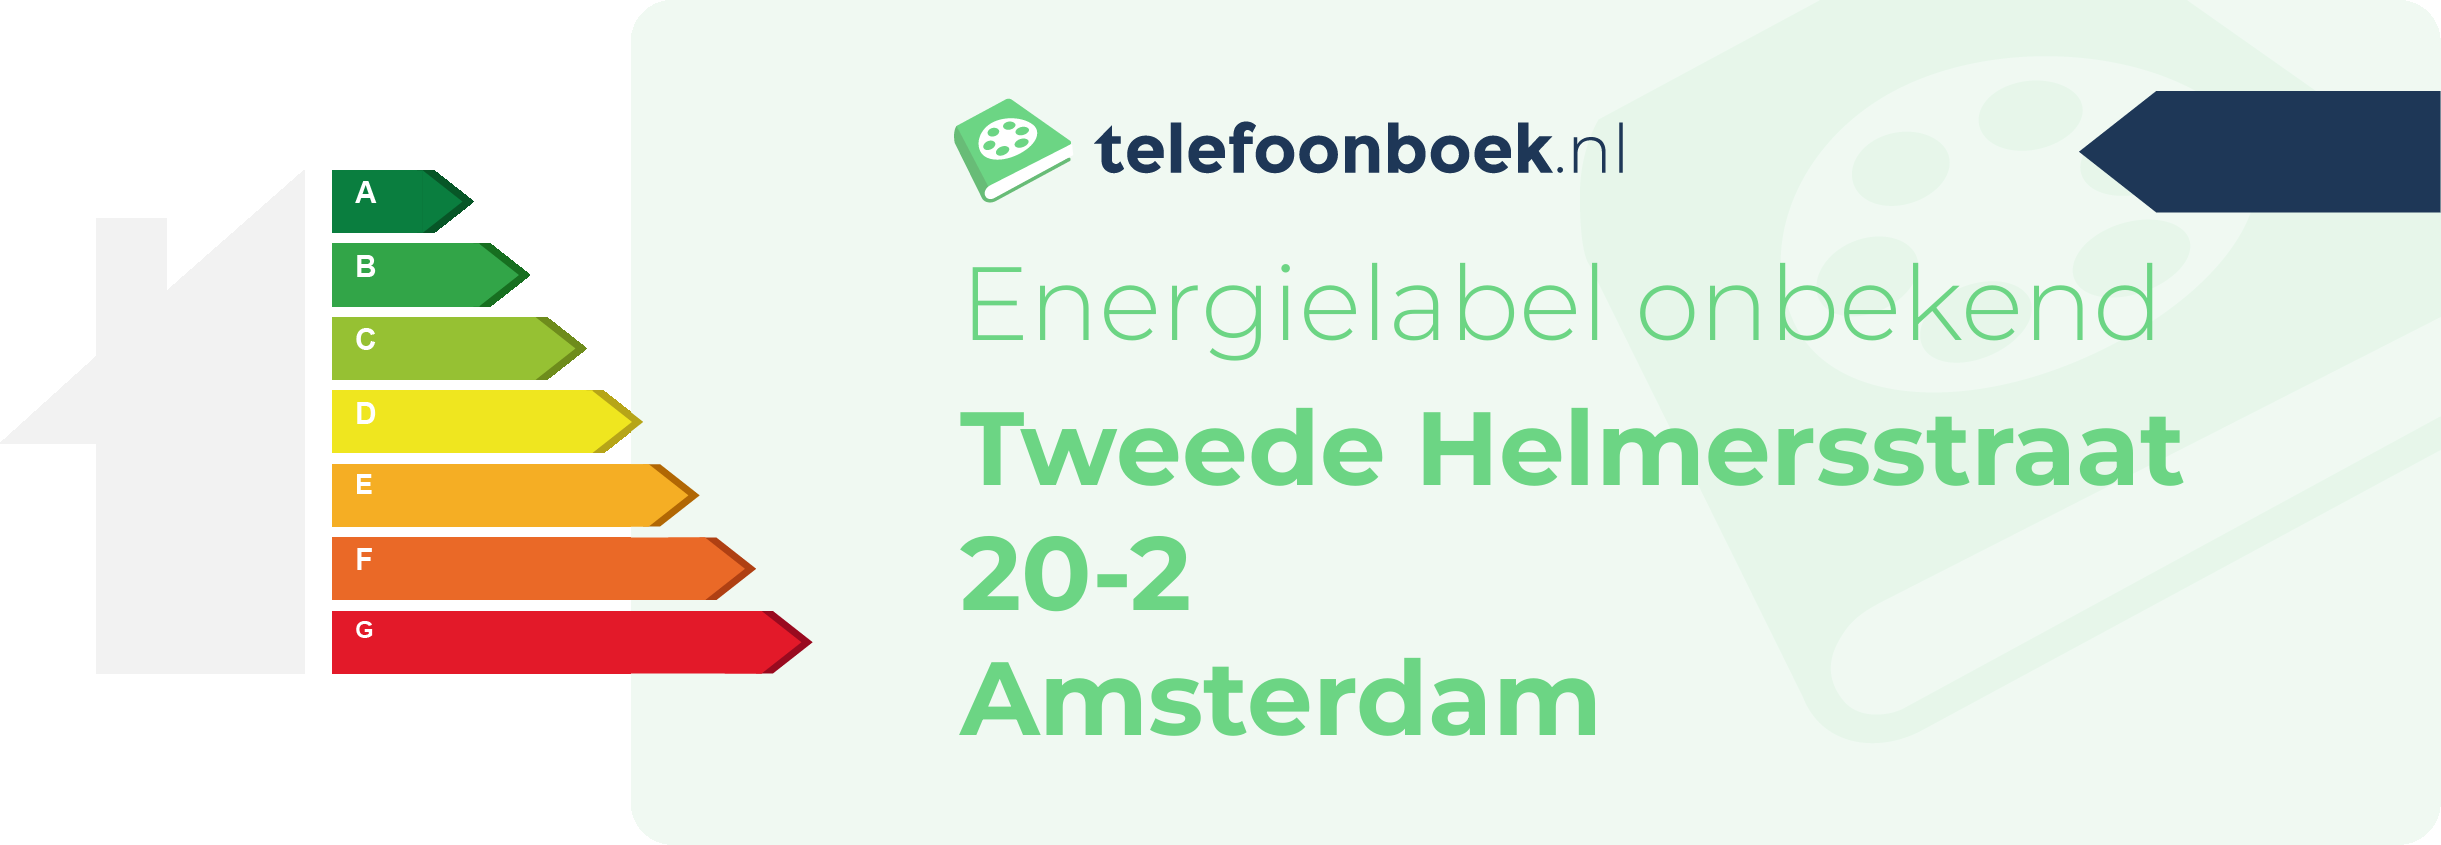 Energielabel Tweede Helmersstraat 20-2 Amsterdam